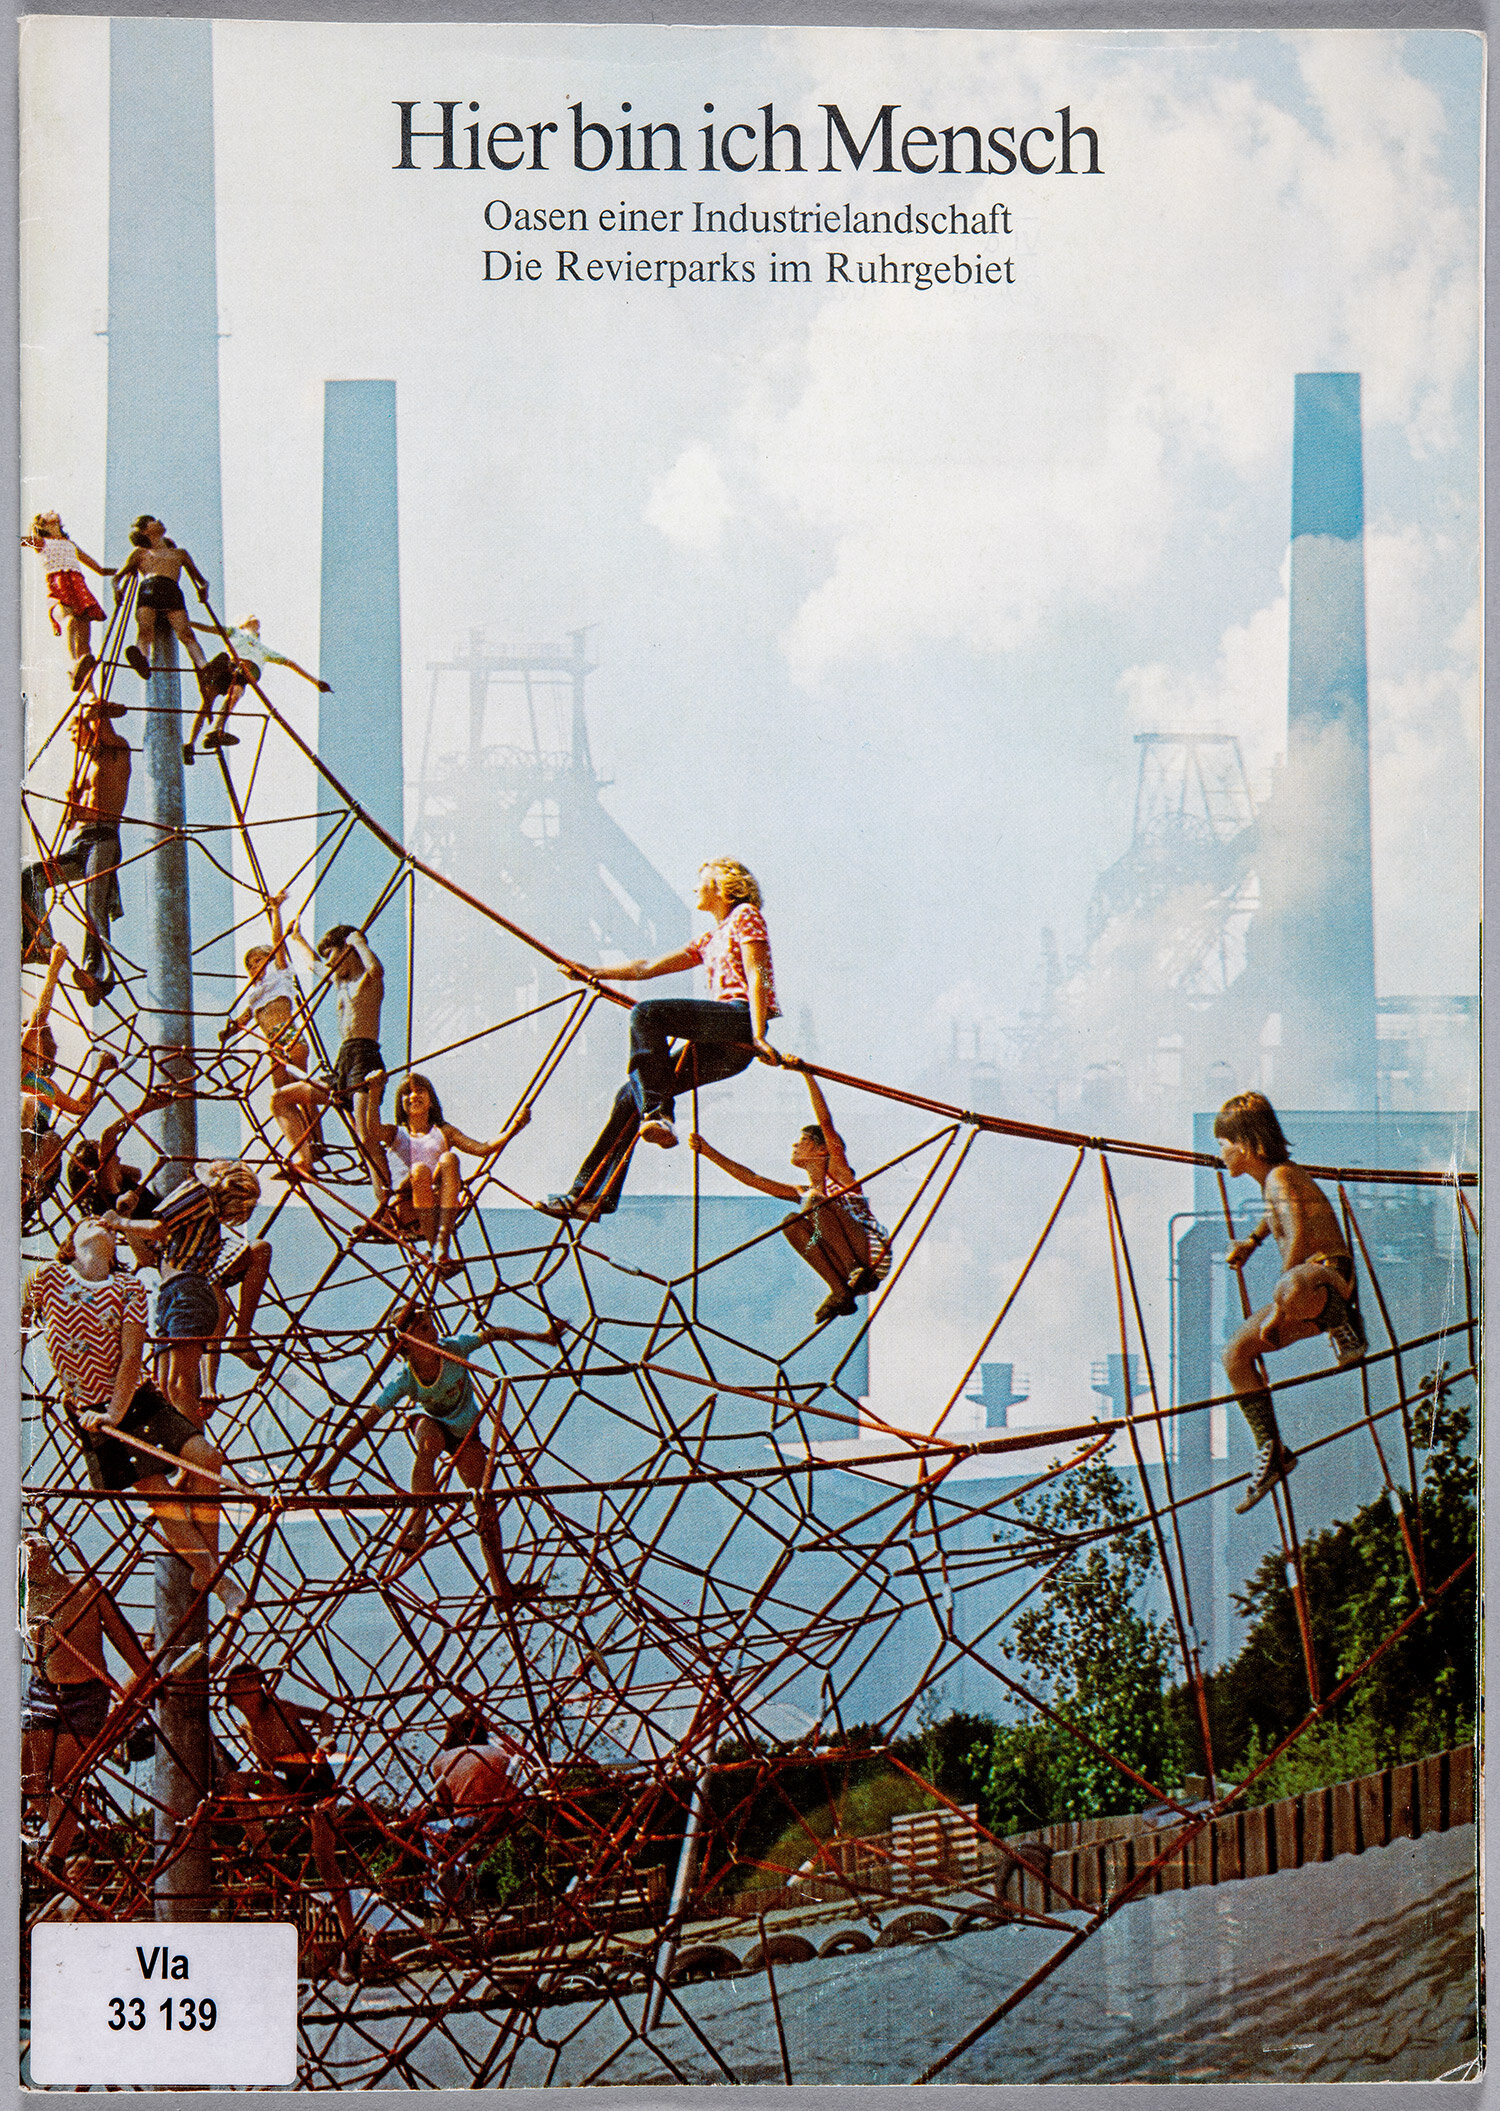 Broschüre zu den Revierparks, 1976